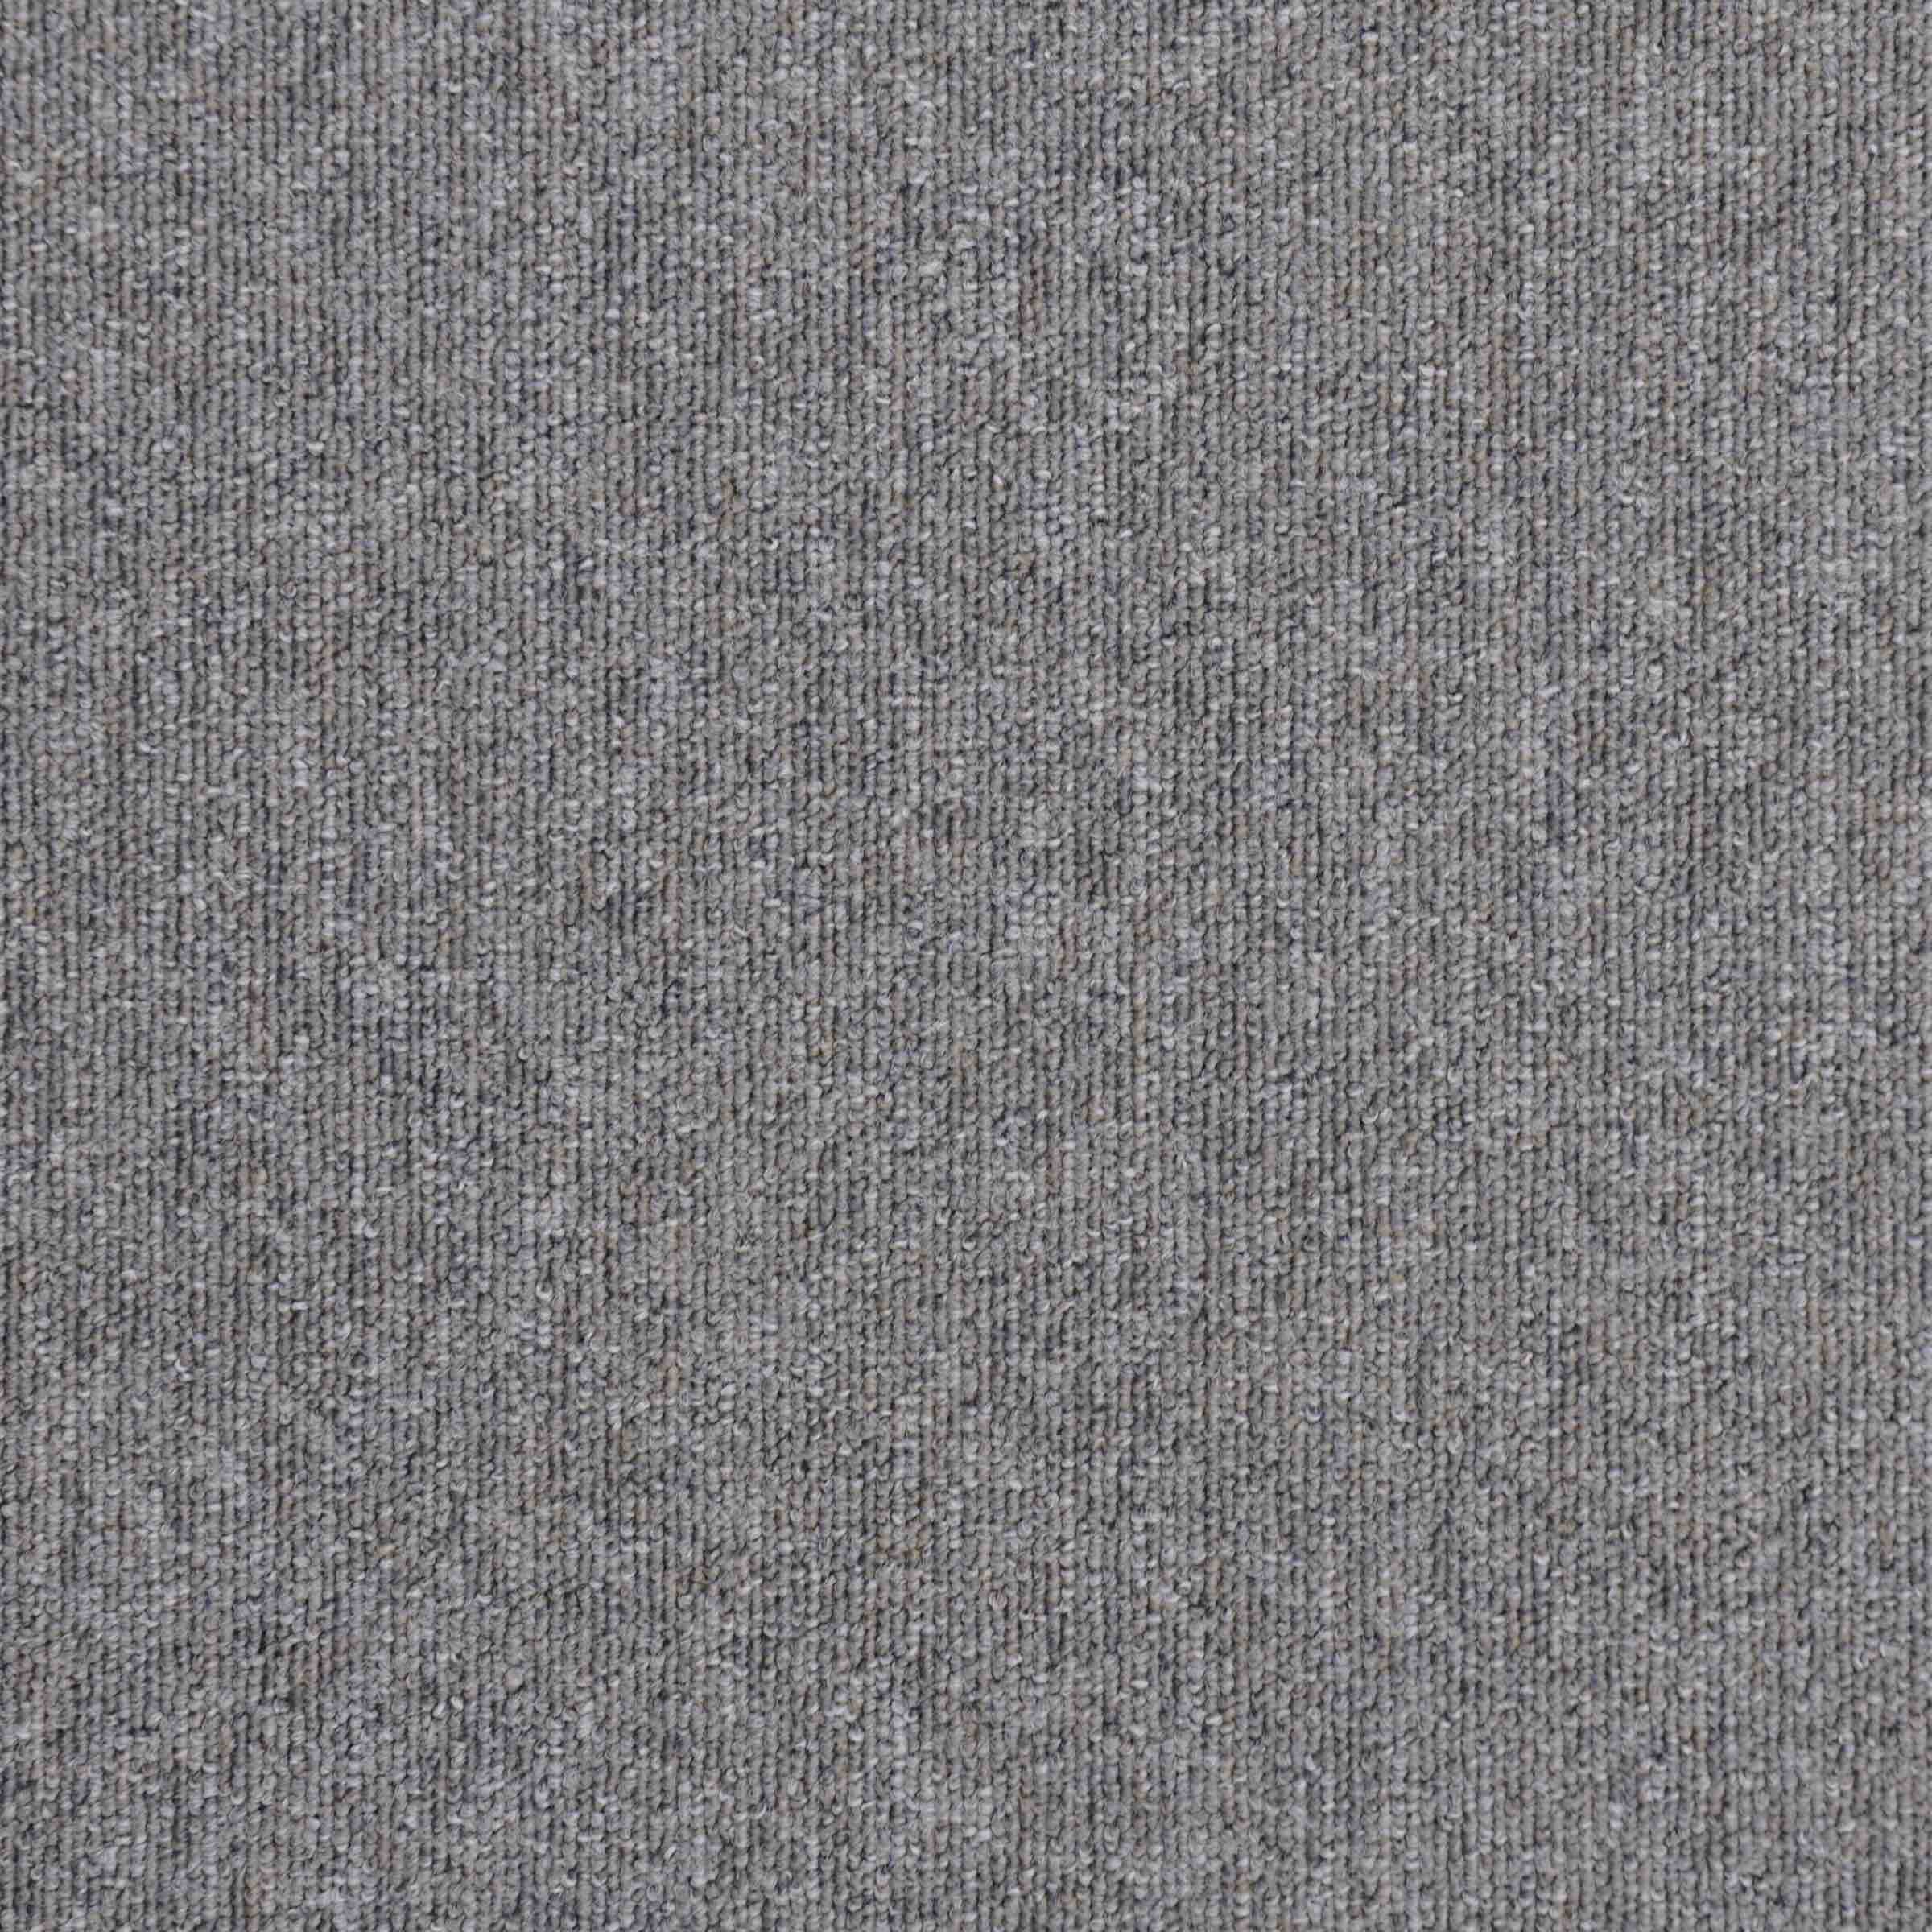 Vital | 8302 | Paragon Carpet Tiles | Commercial Carpet Tiles